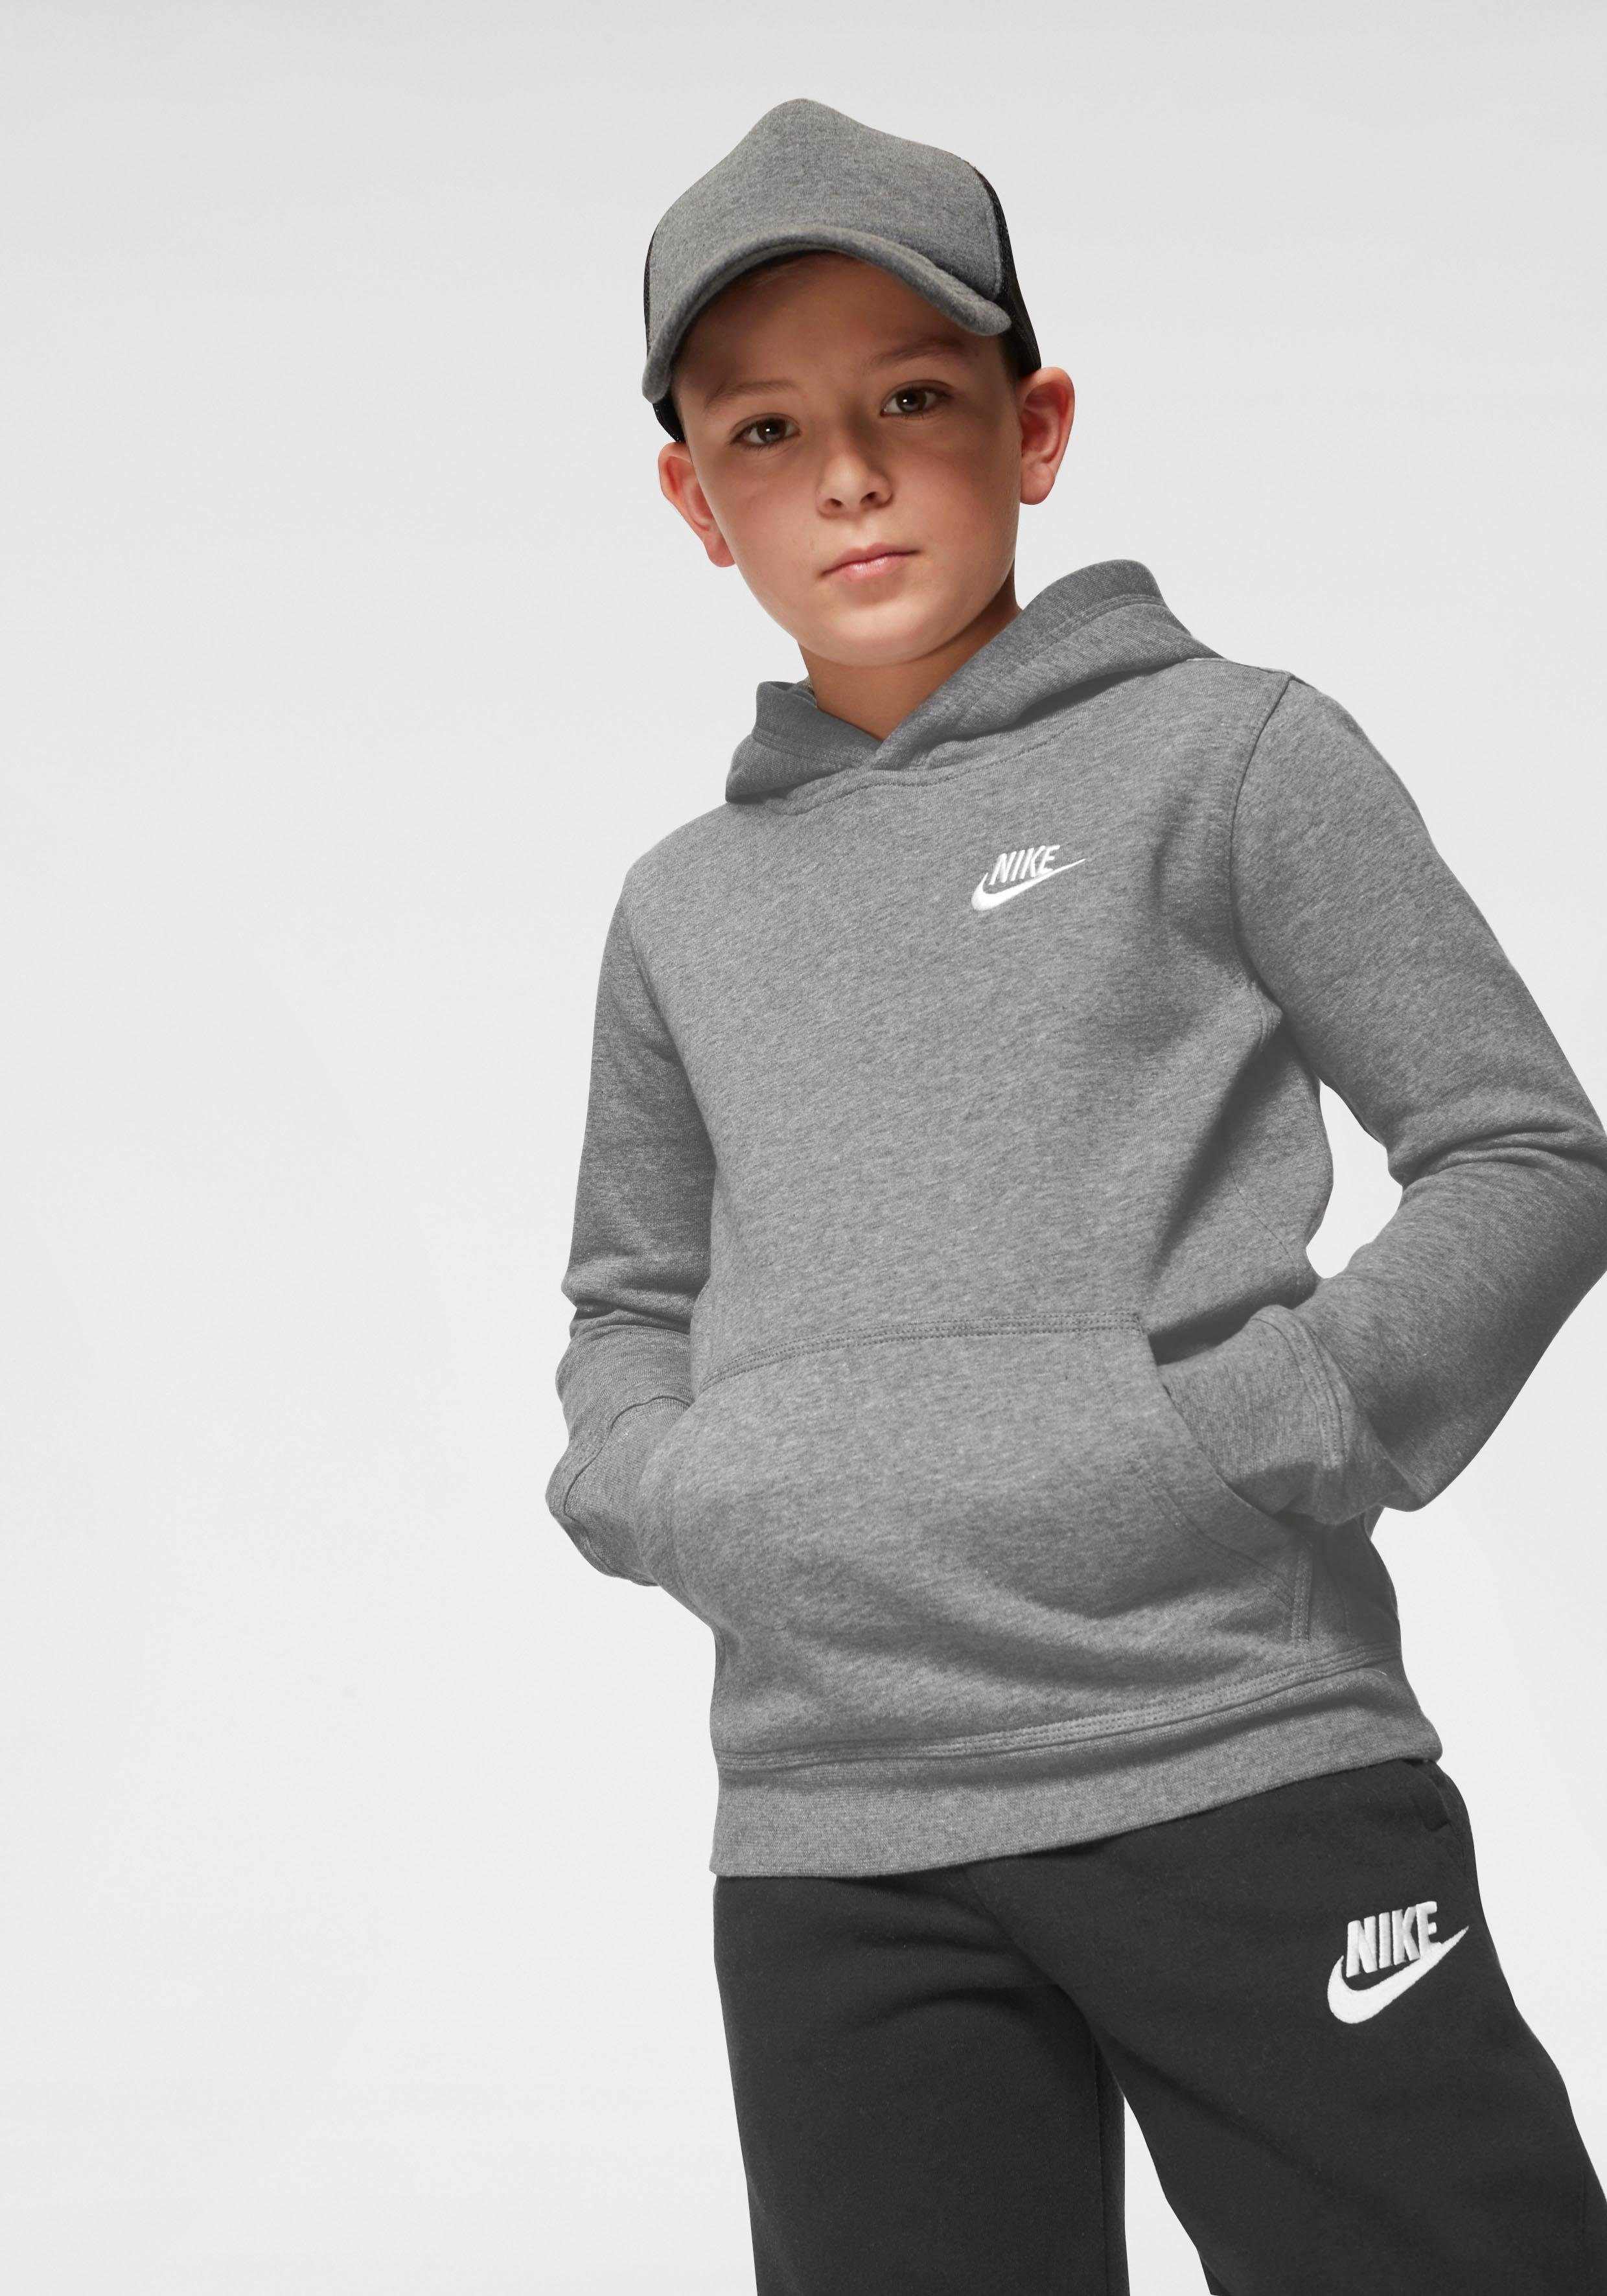 grau-meliert Kids' Nike Kapuzensweatshirt Pullover Hoodie Sportswear Big Club